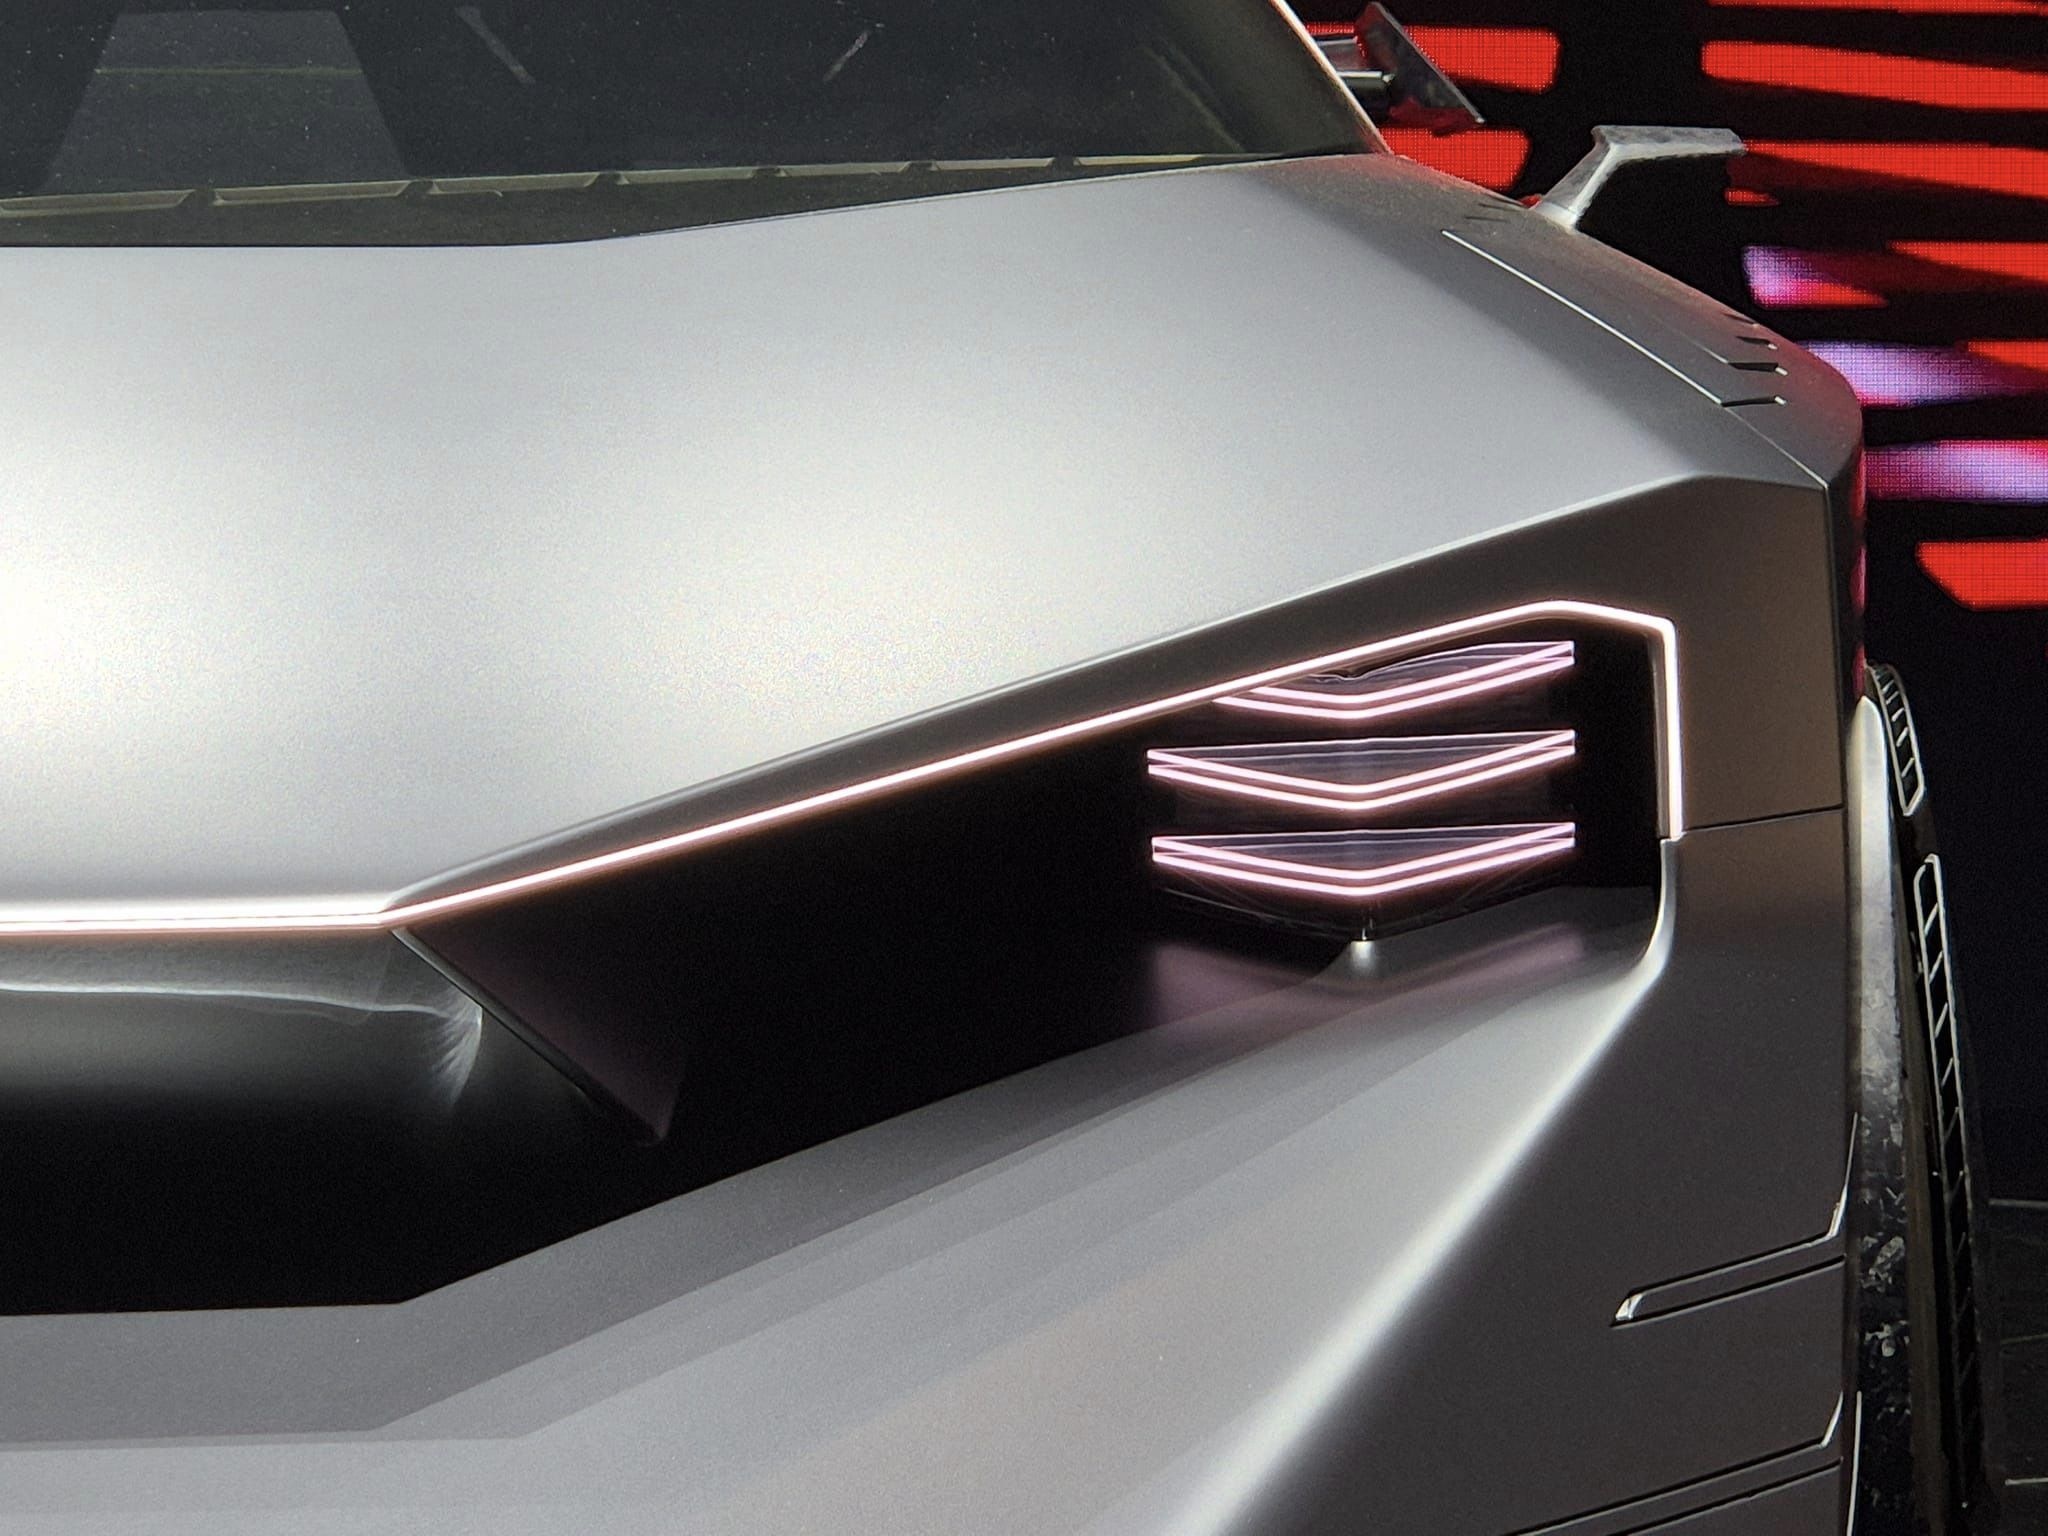 Cận cảnh Hyper Force - siêu xe điện có thiết kế lạ mắt của Nissan - ảnh 8